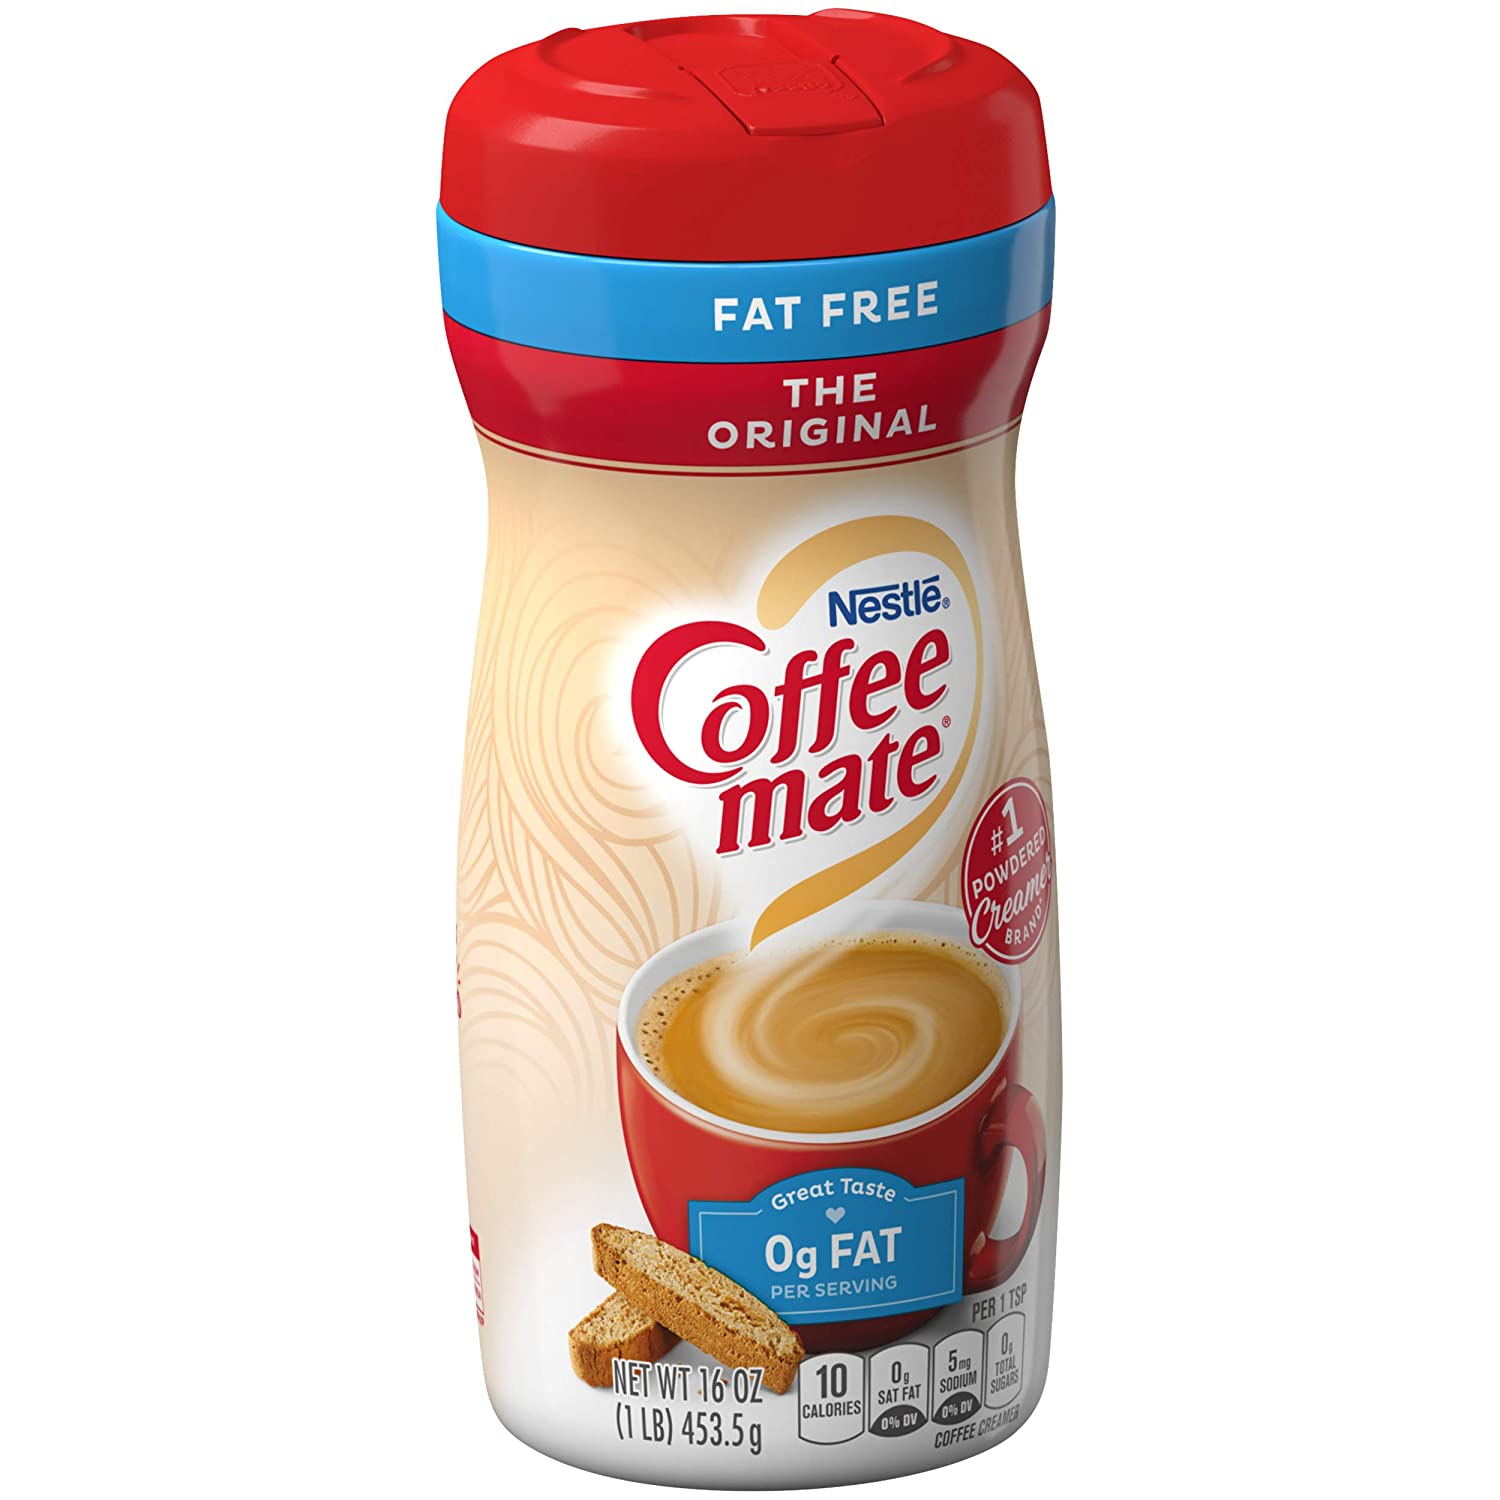 HCMBỘT KEM SỮA KHÔNG ĐƯỜNG COFFEE MATE Fat Free The Original Powder Coffee